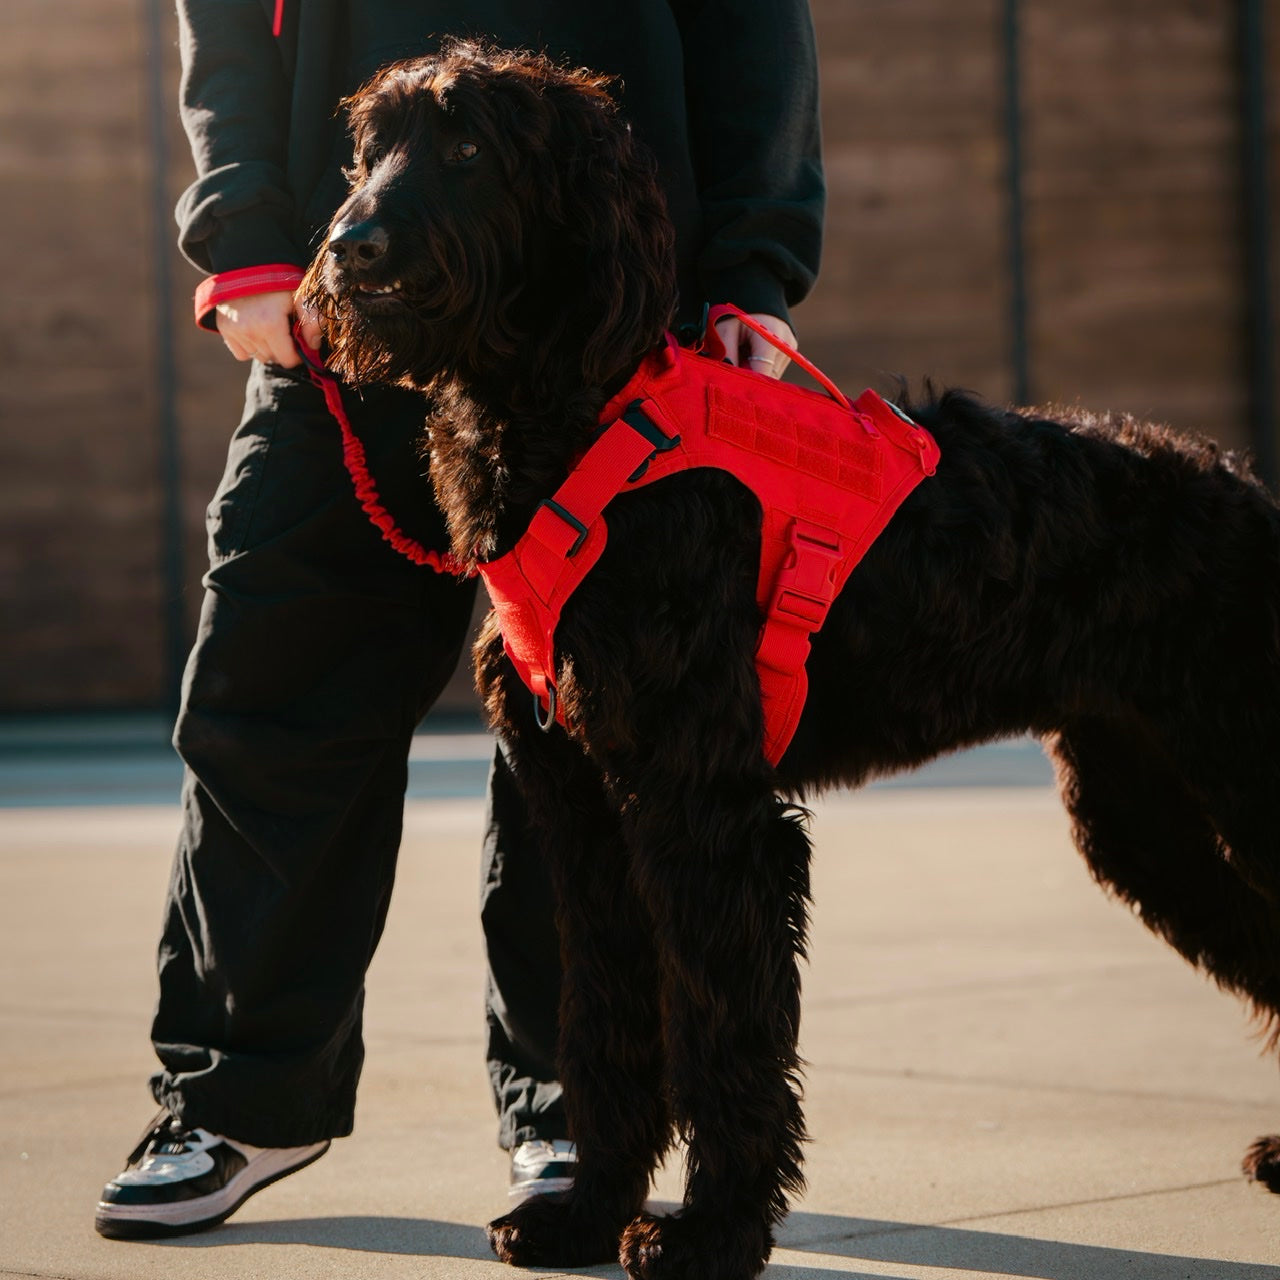 Elite Red Tactical Dog Vest Harness